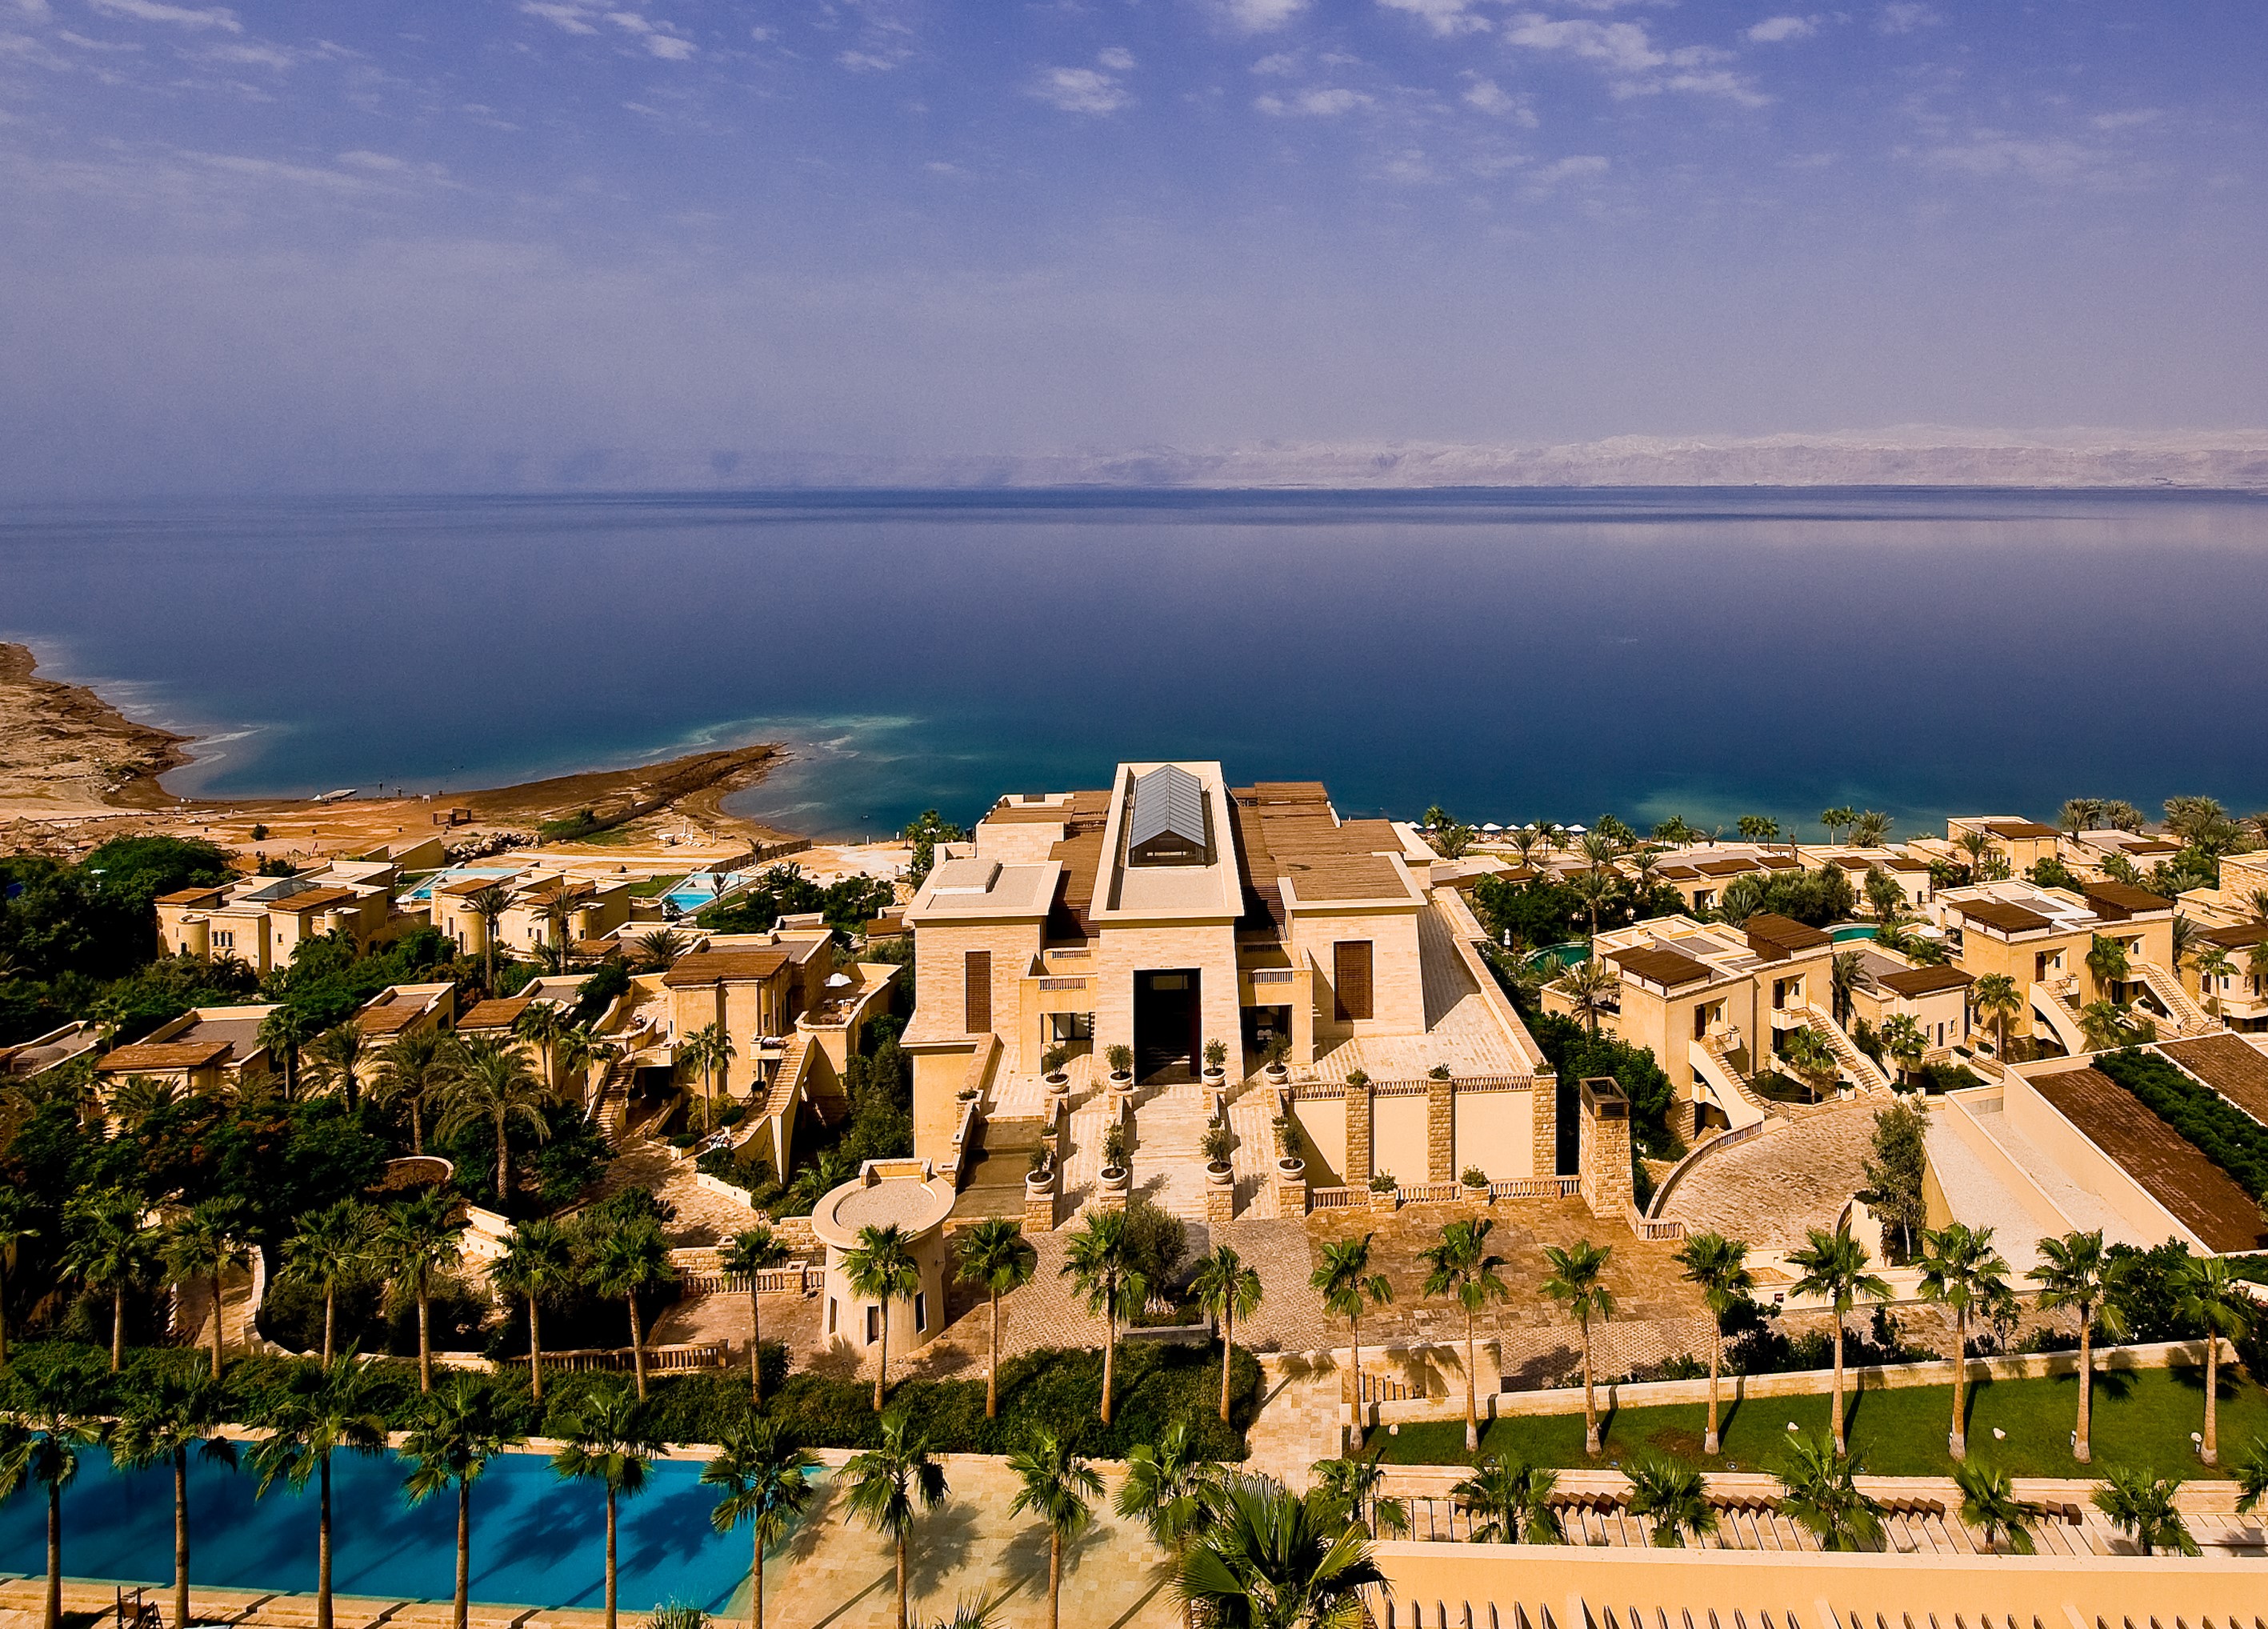 væbner Ungdom Søg Kempinski Hotel Ishtar, Dead Sea - Noah Tours Israel Travel Blog